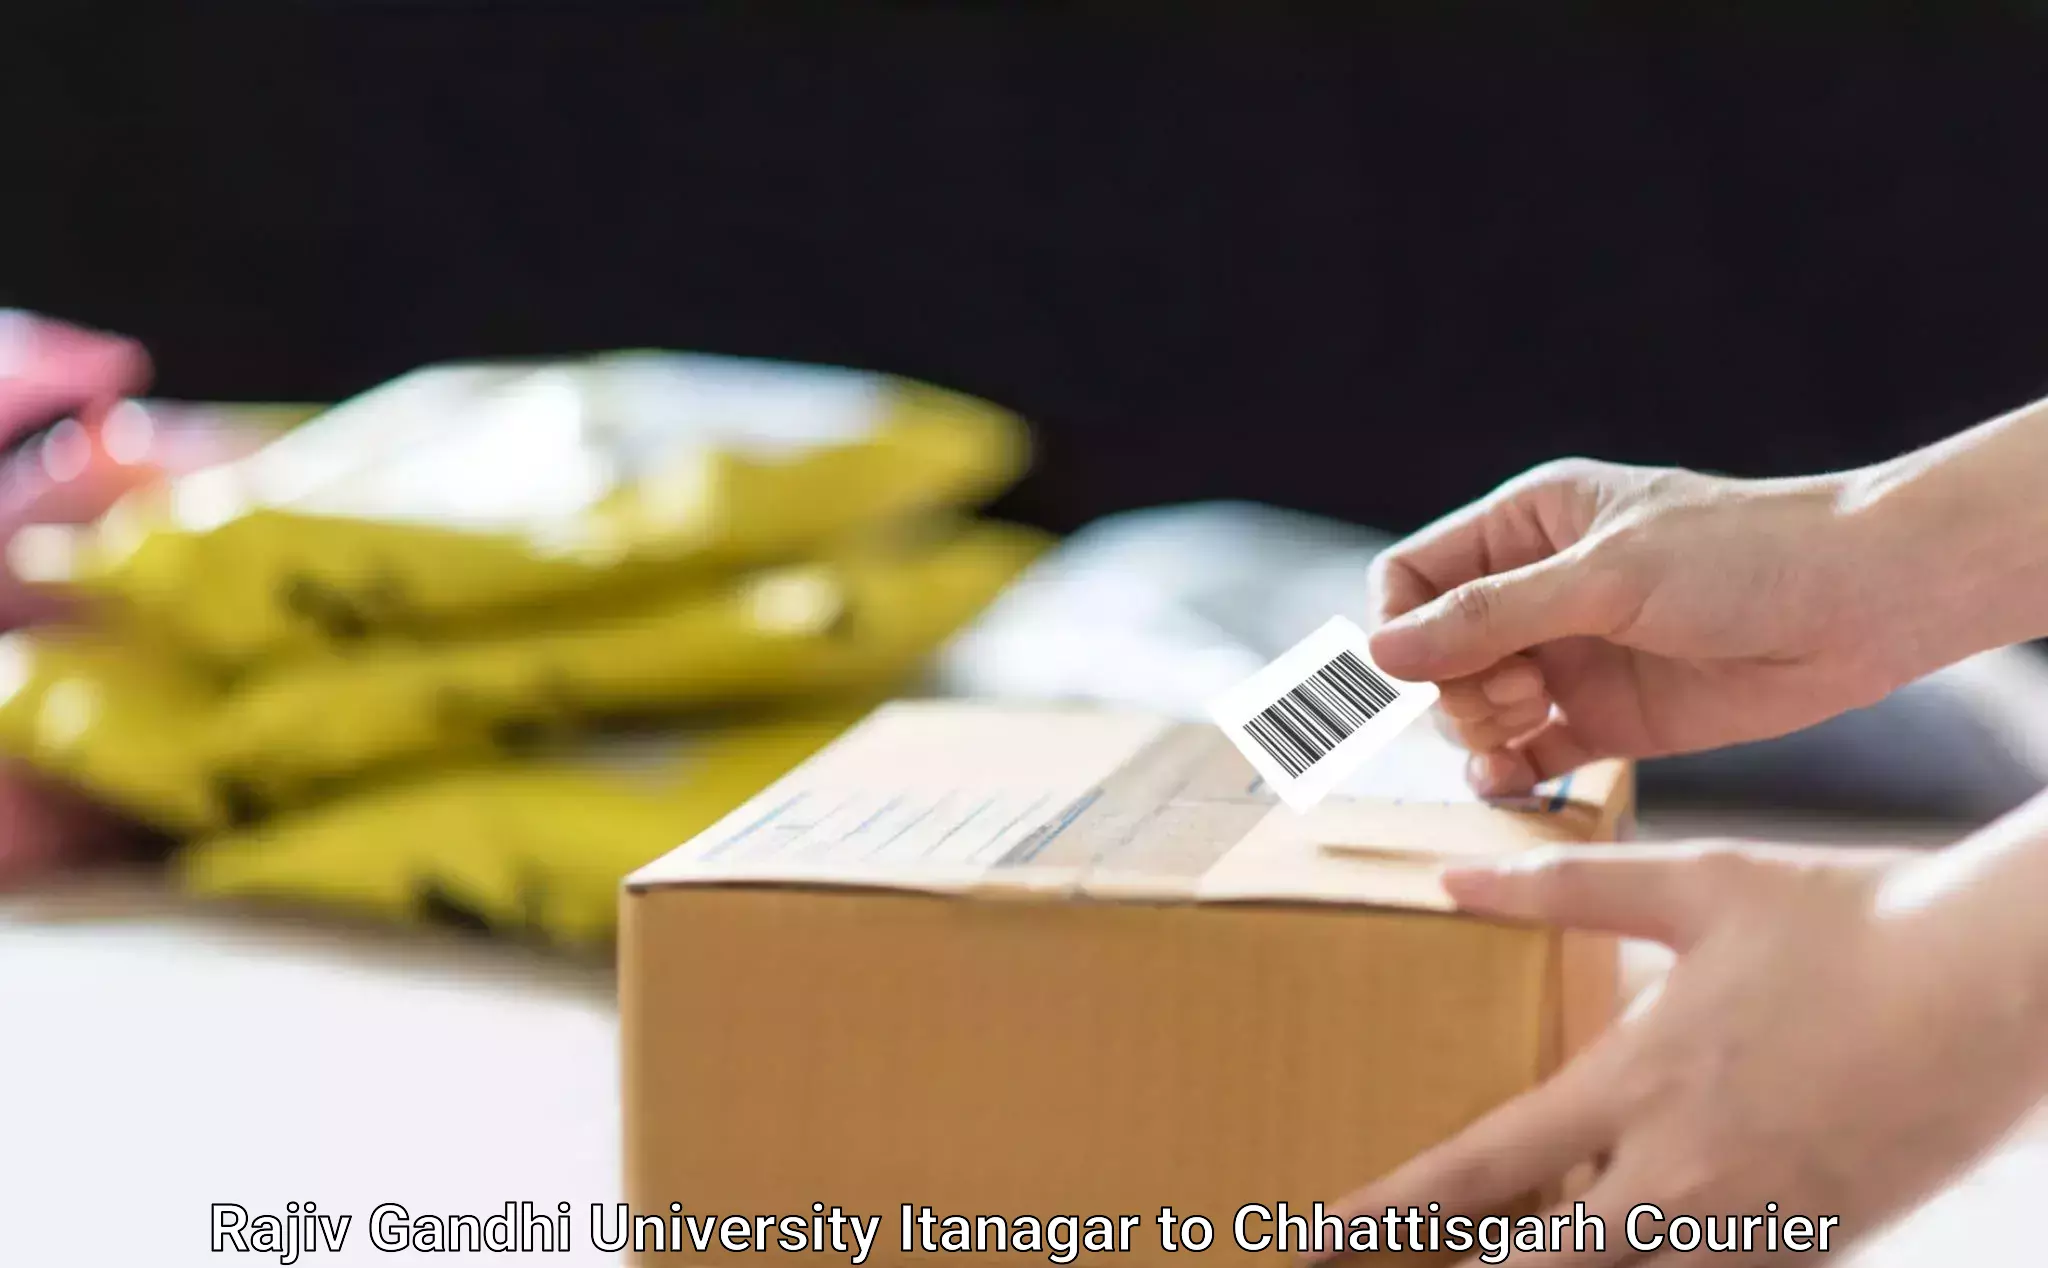 Door-to-door shipment Rajiv Gandhi University Itanagar to Raigarh Chhattisgarh